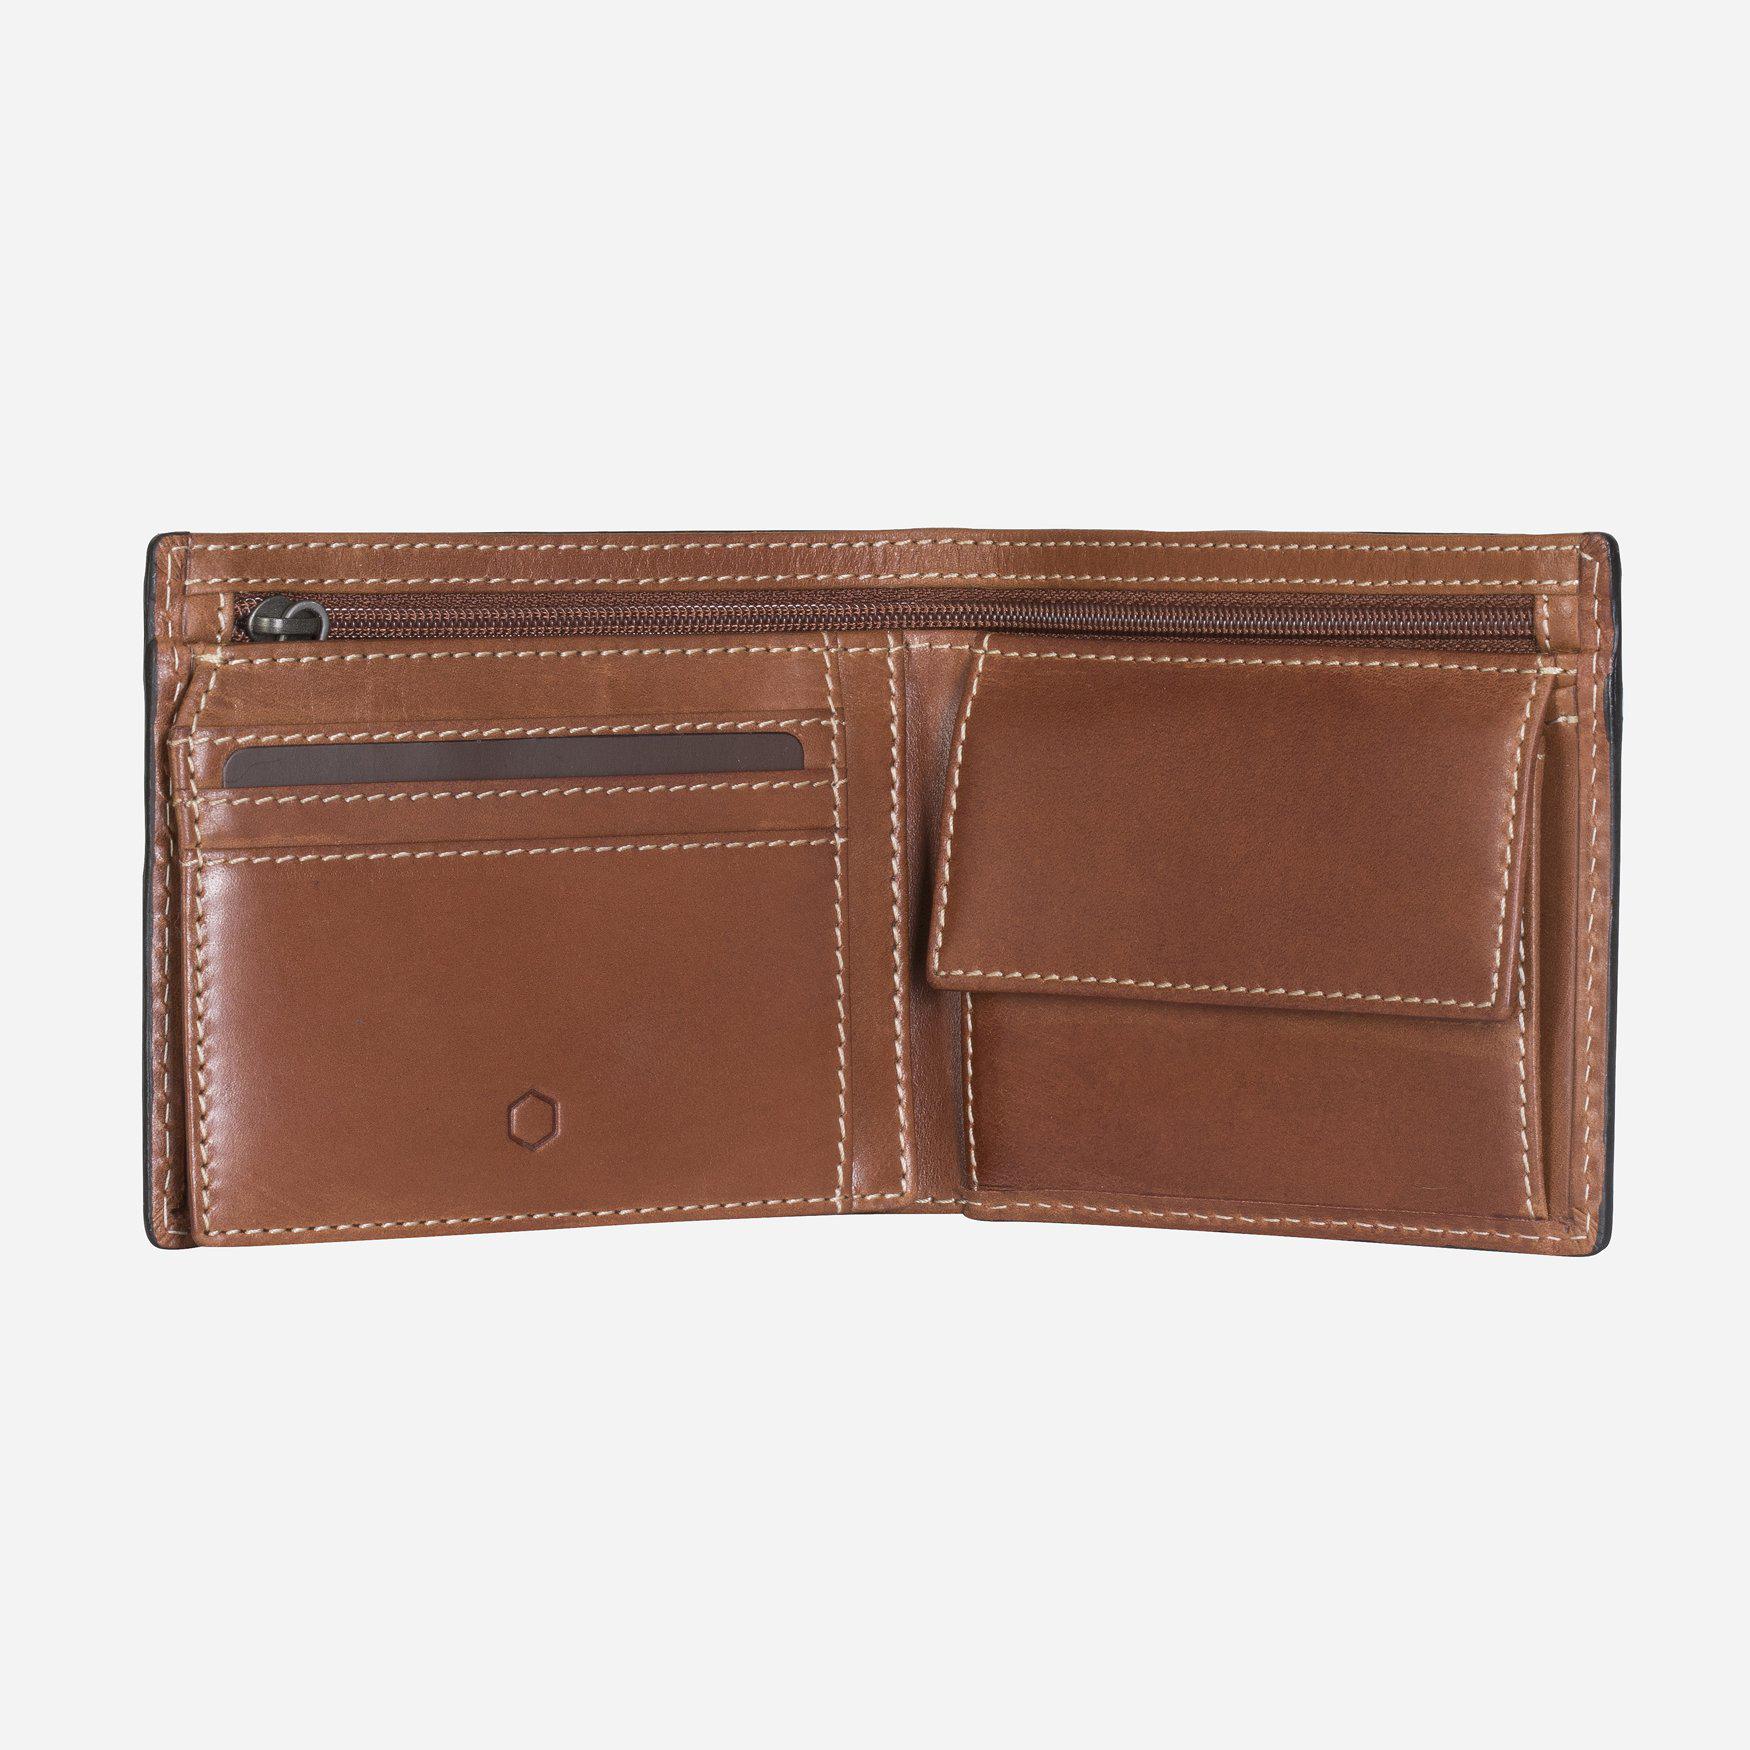 Wallet - Large Billfold Wallet - Coin Pocket & ID Window